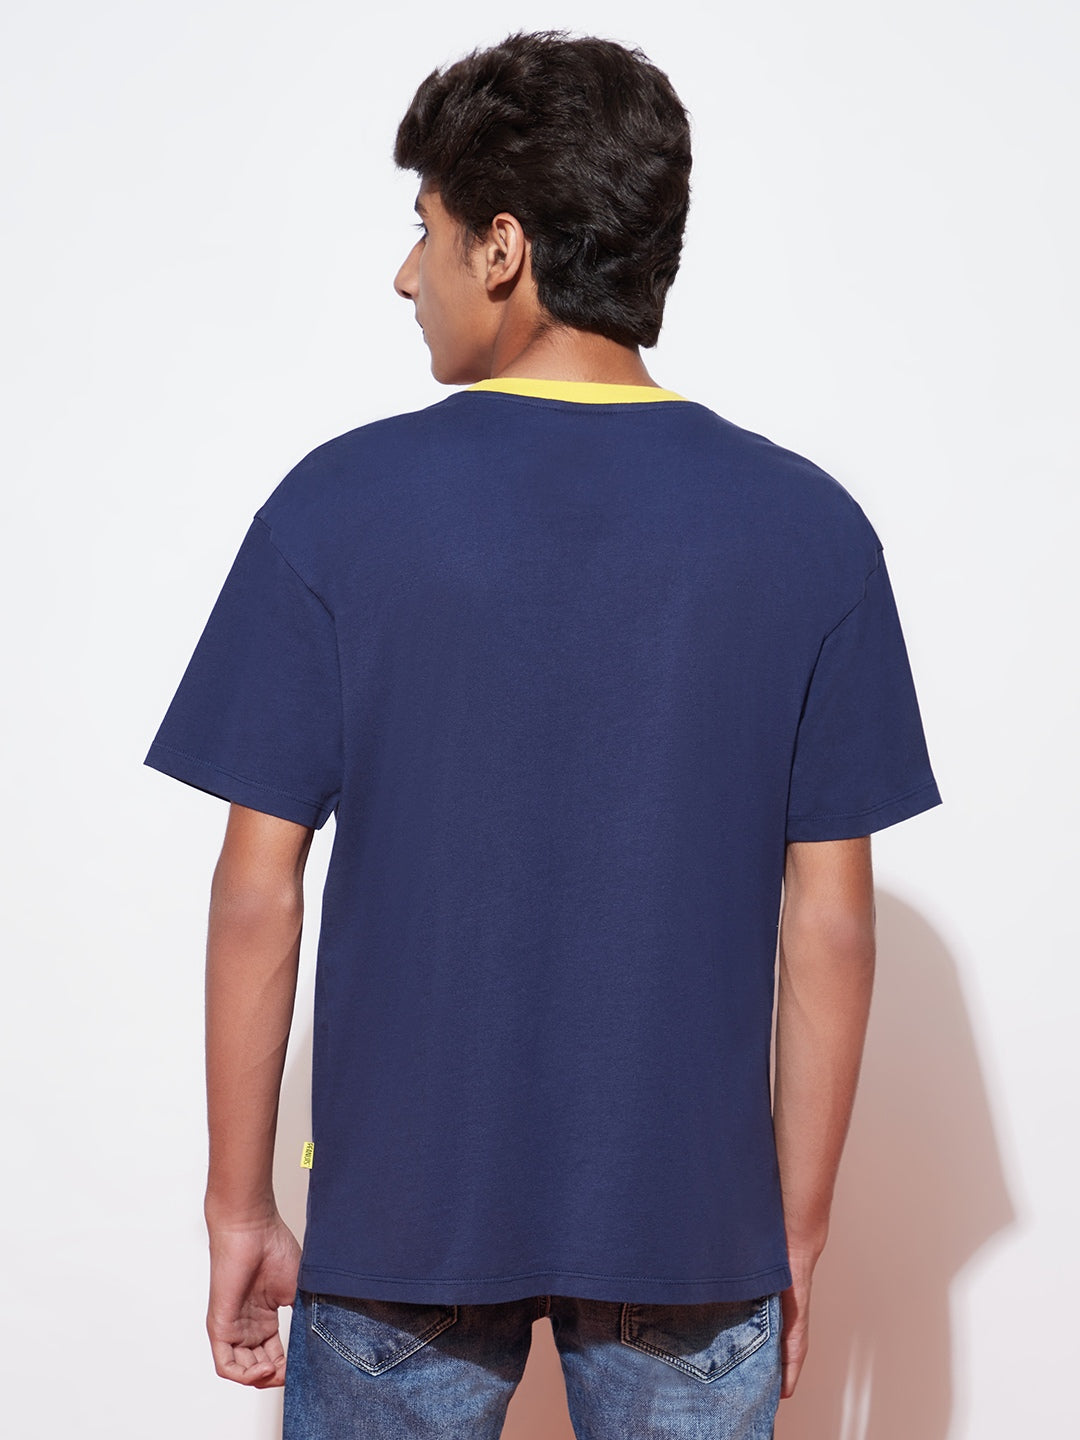 Snoopy Print Navy Blue T-shirt